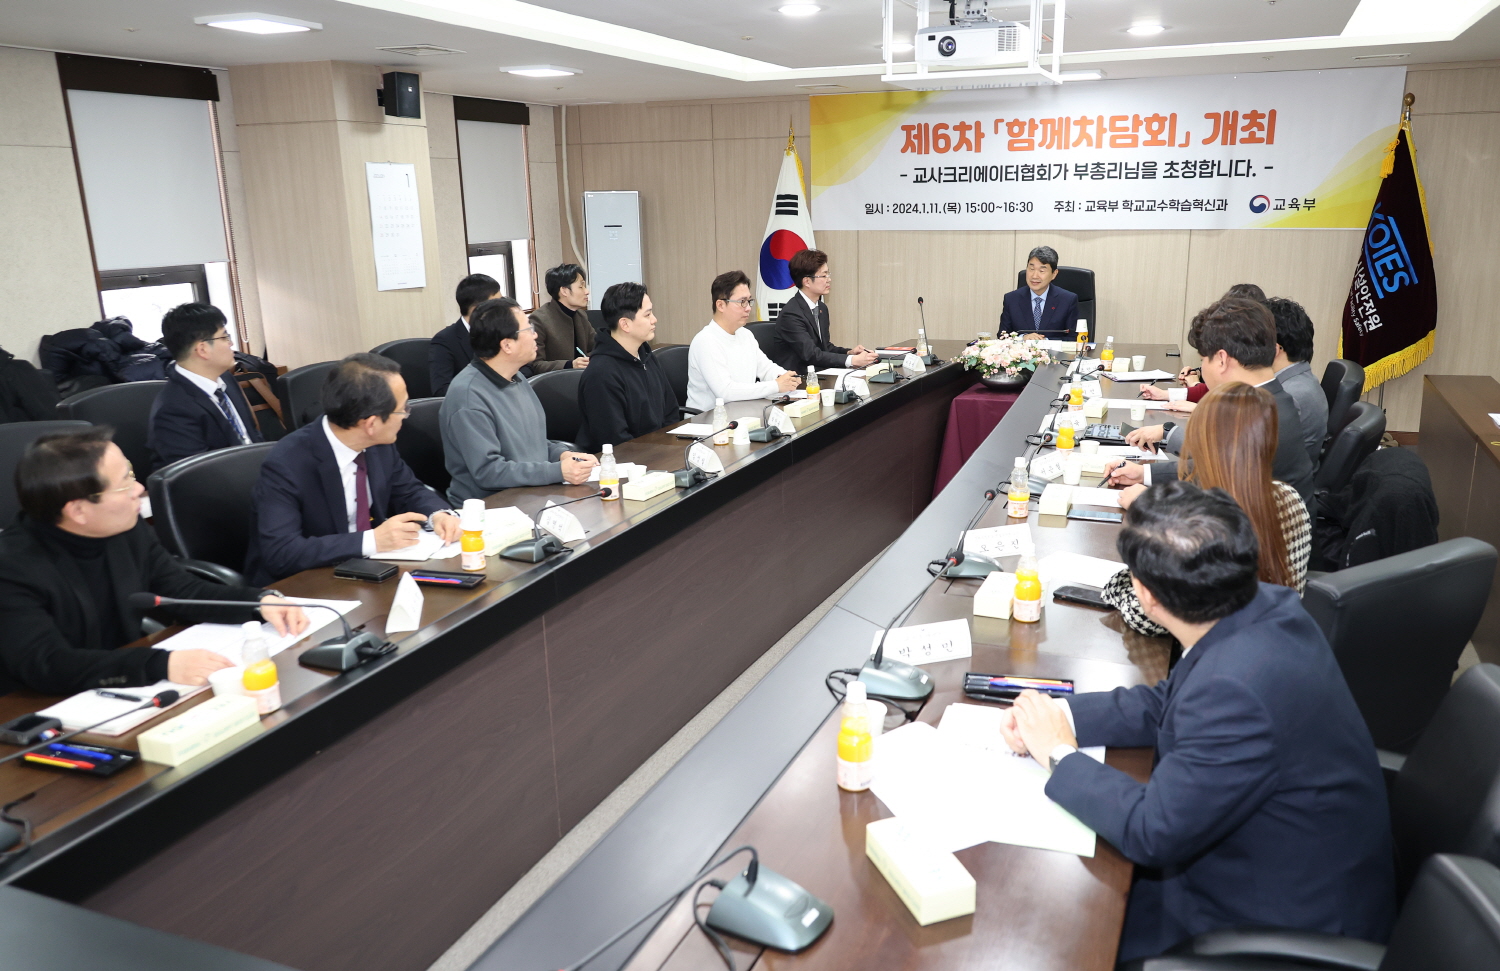 이주호 부총리 겸 교육부장관은 1월 11일(목), 한국교육시설안전원에서 열린 제6차 함께차담회에서 교사크리에이터협회와 함께 ‘자율적 수업 혁신 방안’에 대해 논의하였다.